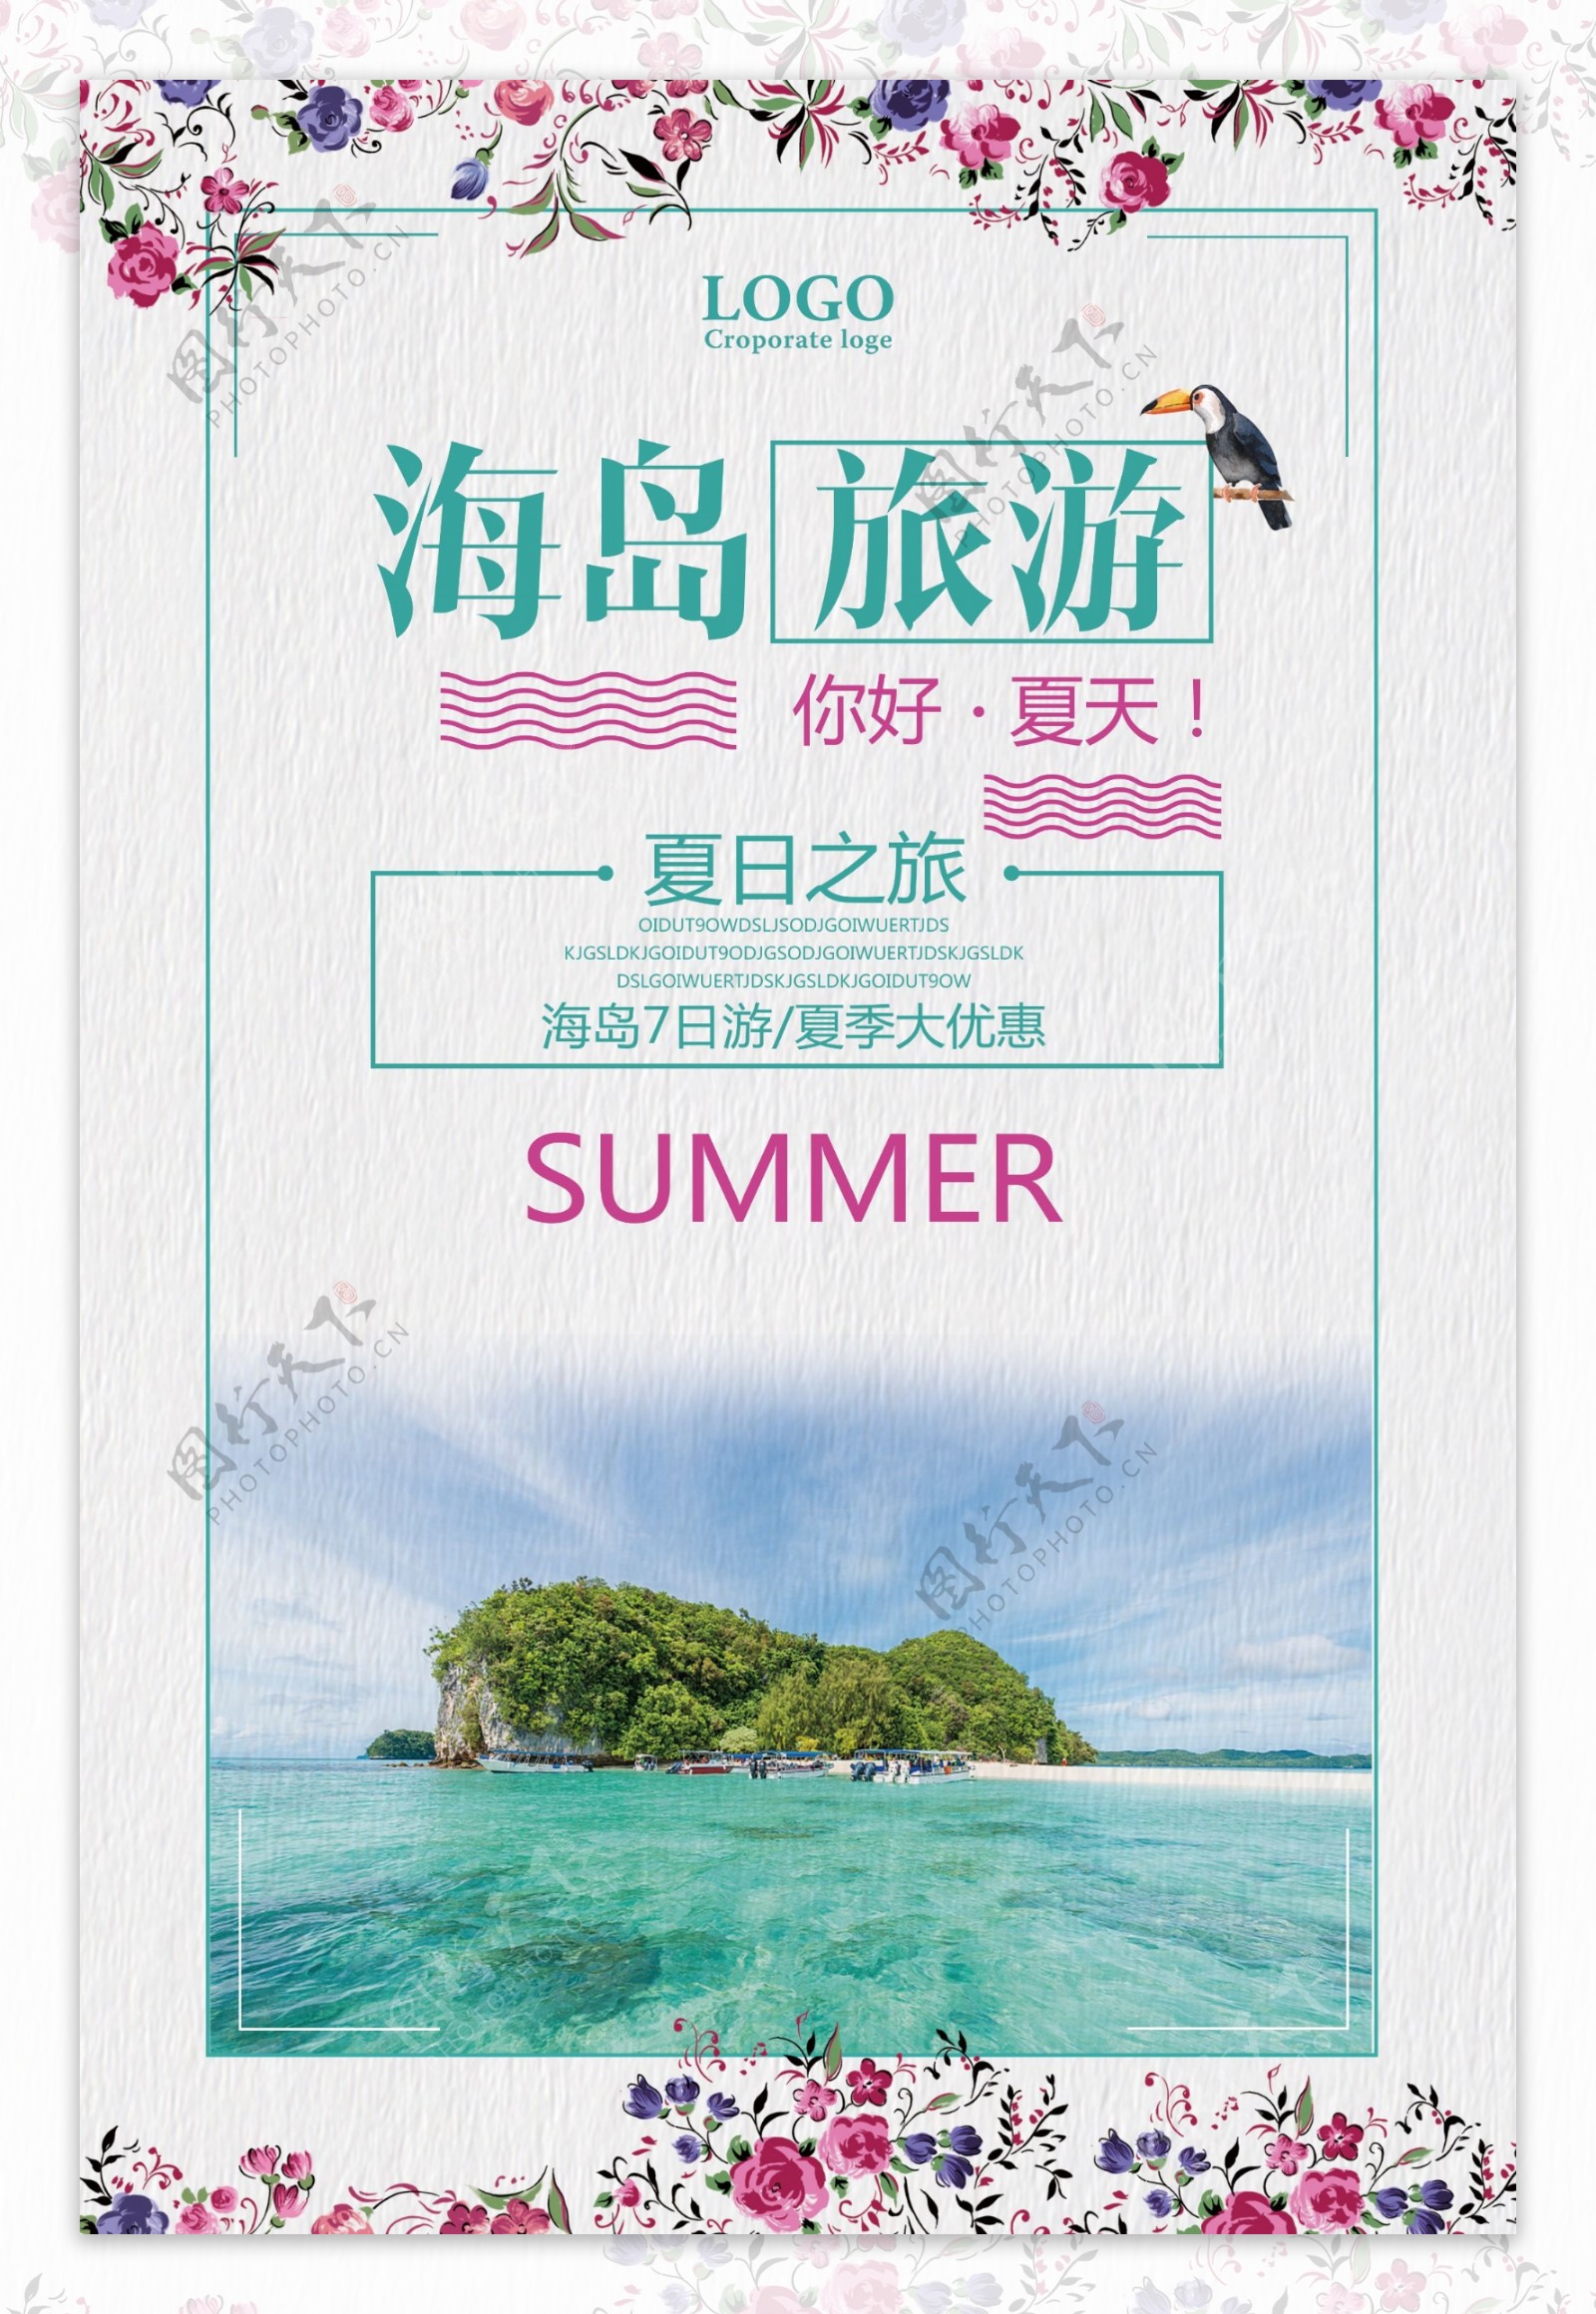 海岛旅游暑假宣传海报